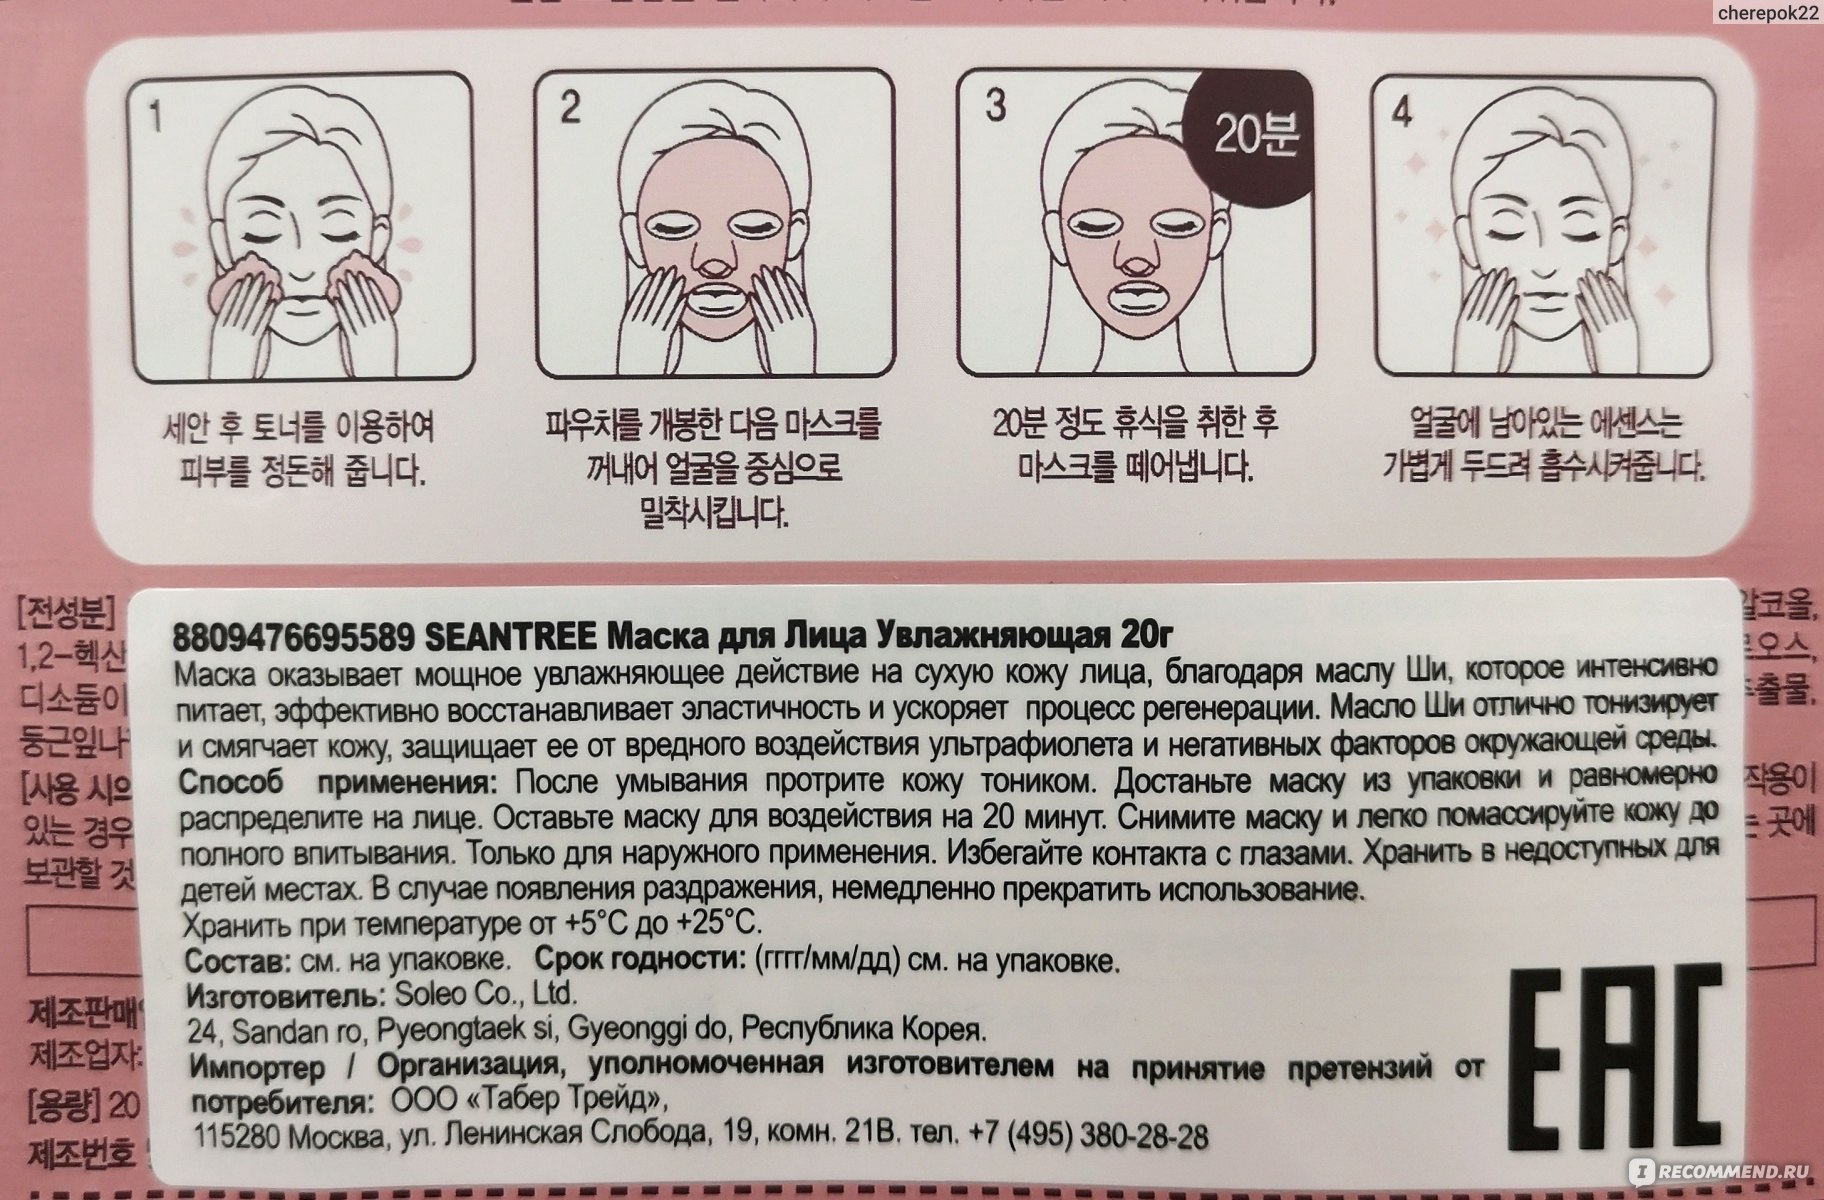 Маска сколько часов. Маски для лица тканевые инструкция. Корейская маска для воздействия. Тканевая маска для лица как пользоваться. Тканевая маска для лица как пользоваться правильно корейская.